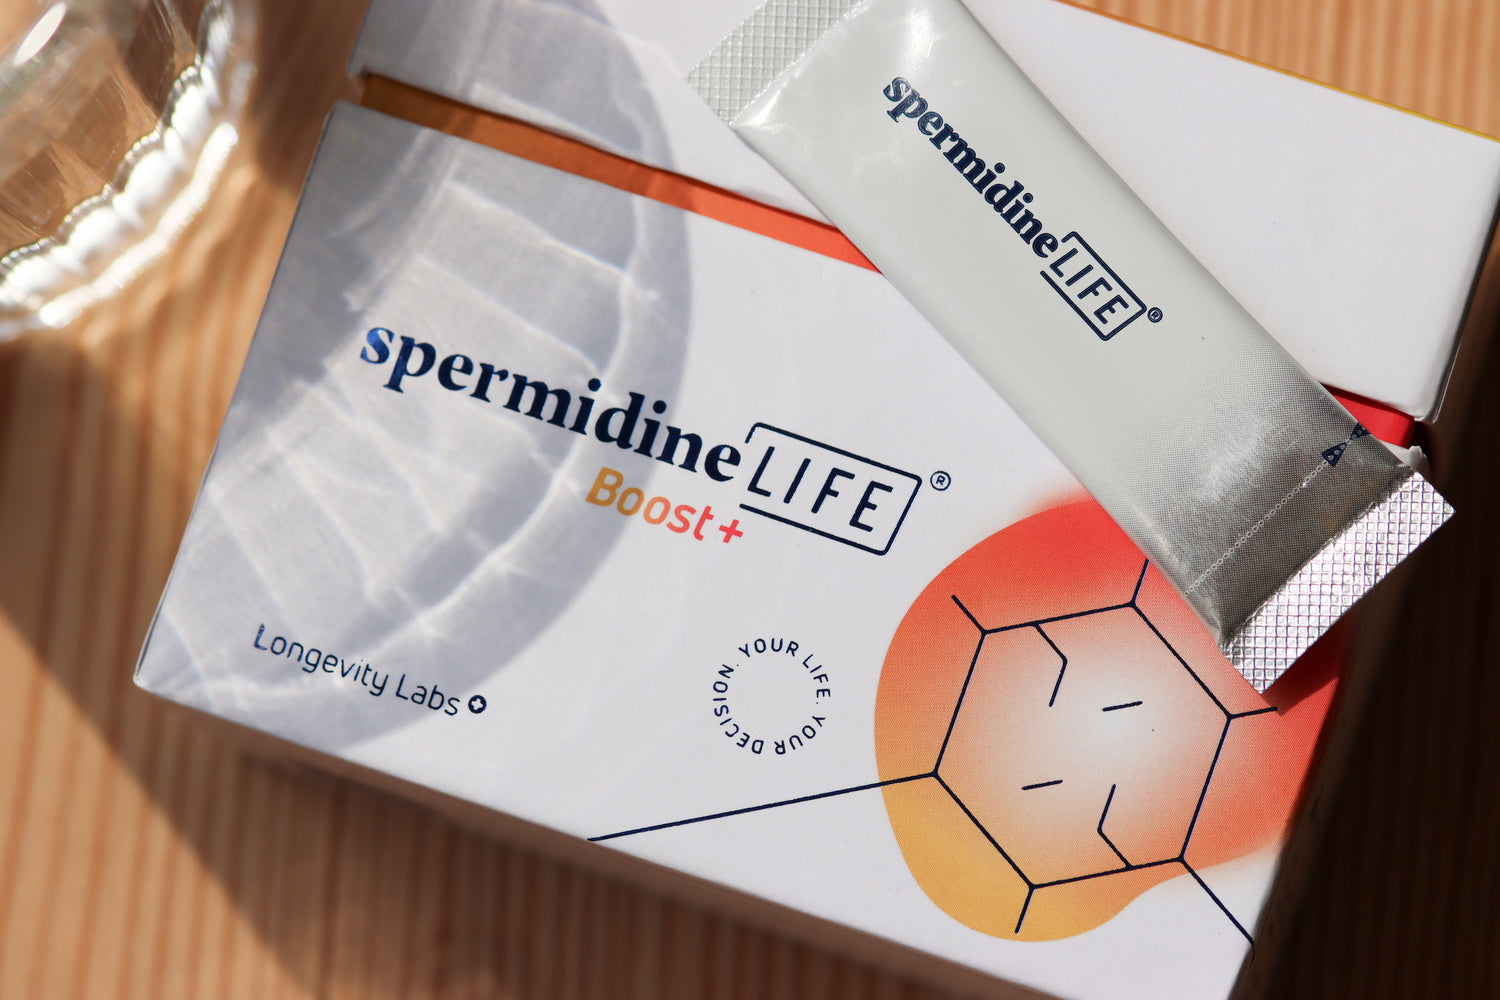 spermidineLIFE® Boost+ liegend auf Tisch